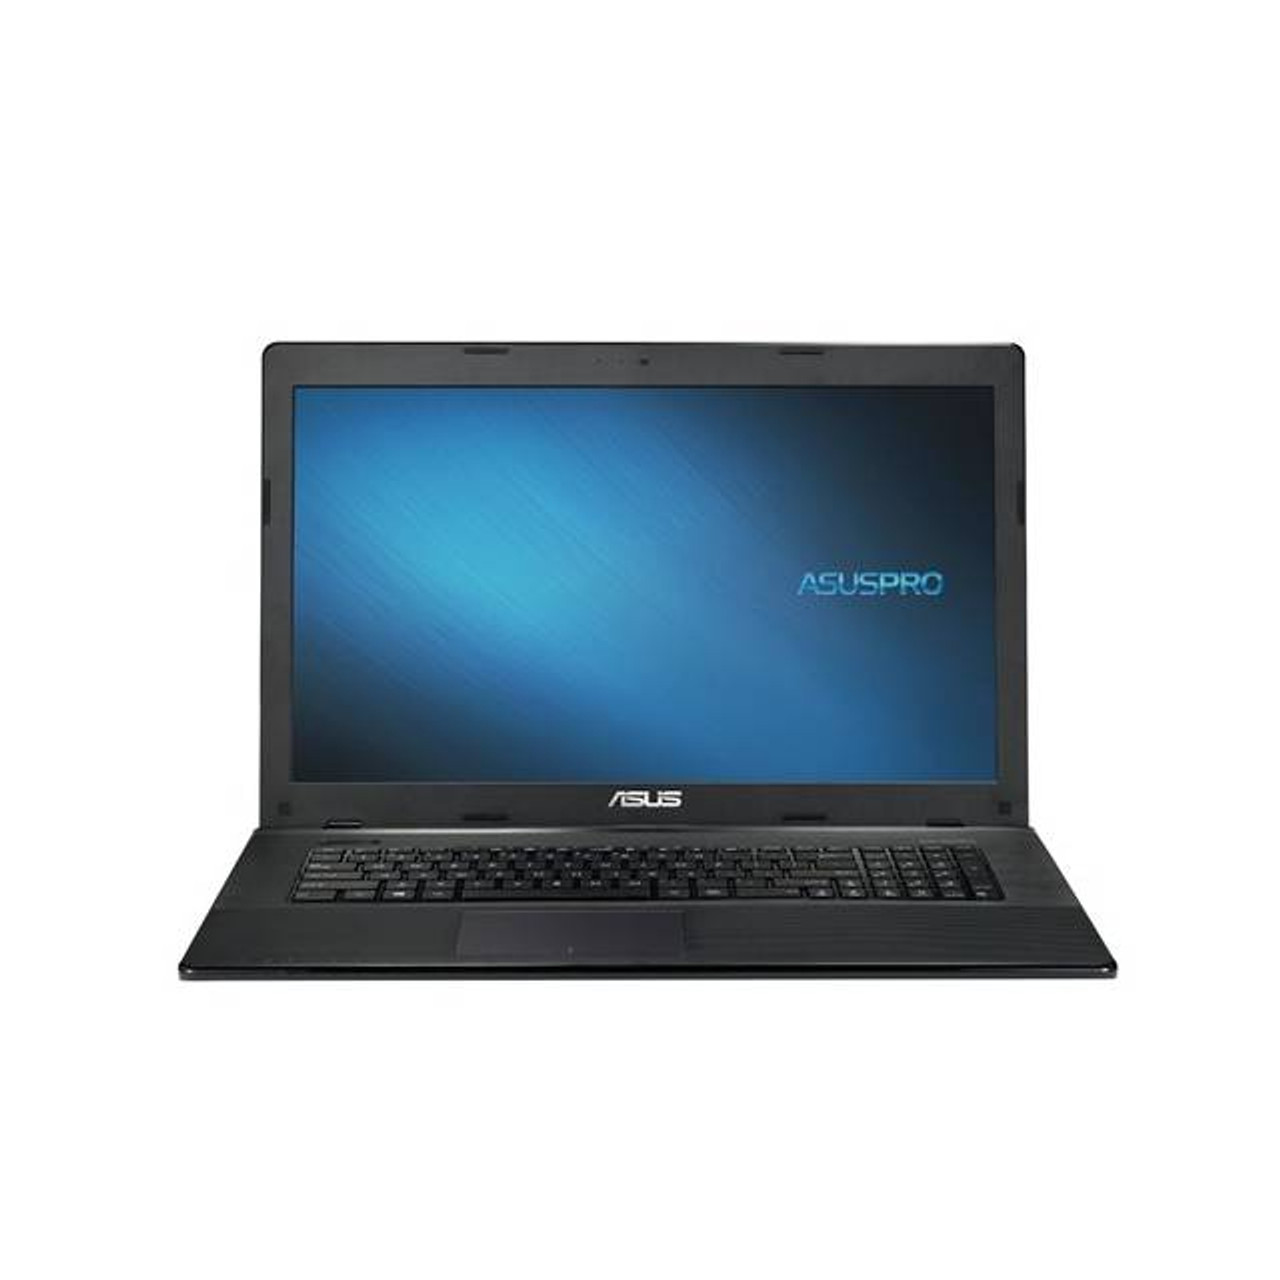 Asus X755JA-DS71 17.3 inch Intel Core i7-4712MQ 2.3GHz/ Intel HM86/ 8GB DDR3L/ 1TB HDD/ DVD±RW/ USB3.0/ Windows 8.1 Notebook (Black)